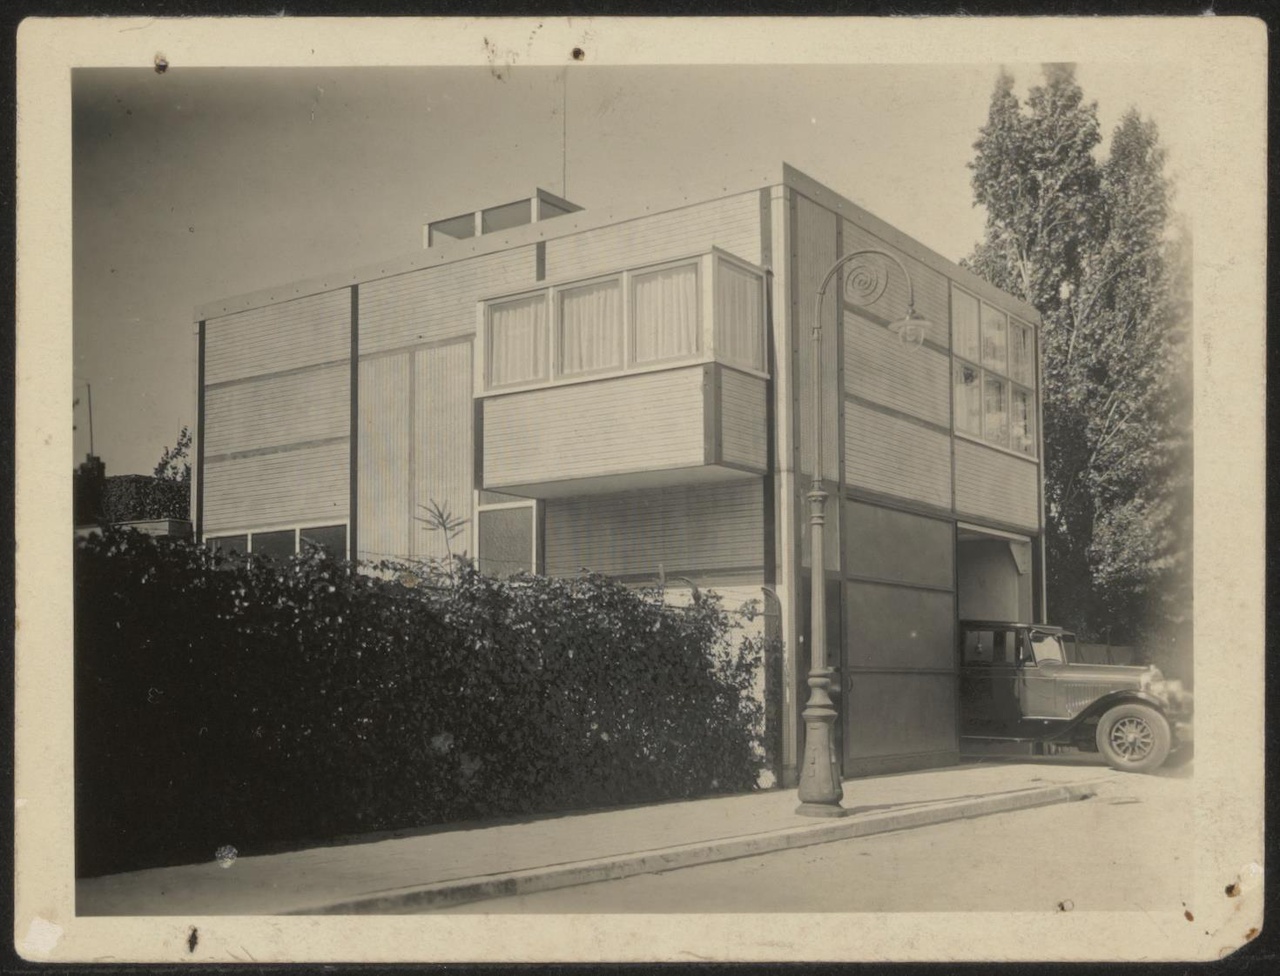 Afbeelding van garage met woning, ca.1928, met auto in de garagedeur